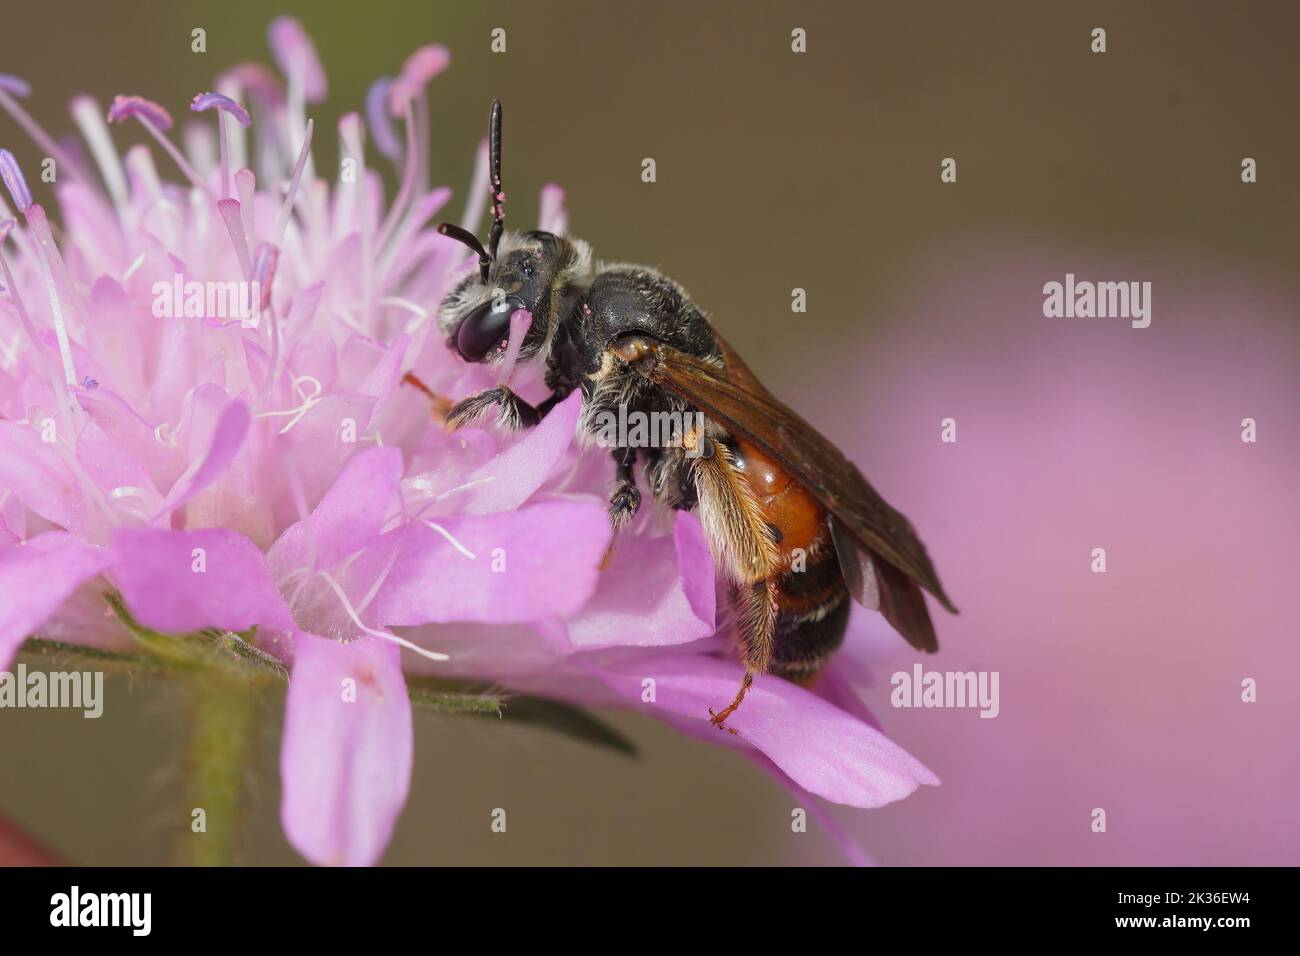 Gros plan sur une femelle grande abeille minière scabieuse, Andrena hattfiana, assise sur son hôtfabrique pourpre, Scabiosa columbaria Banque D'Images